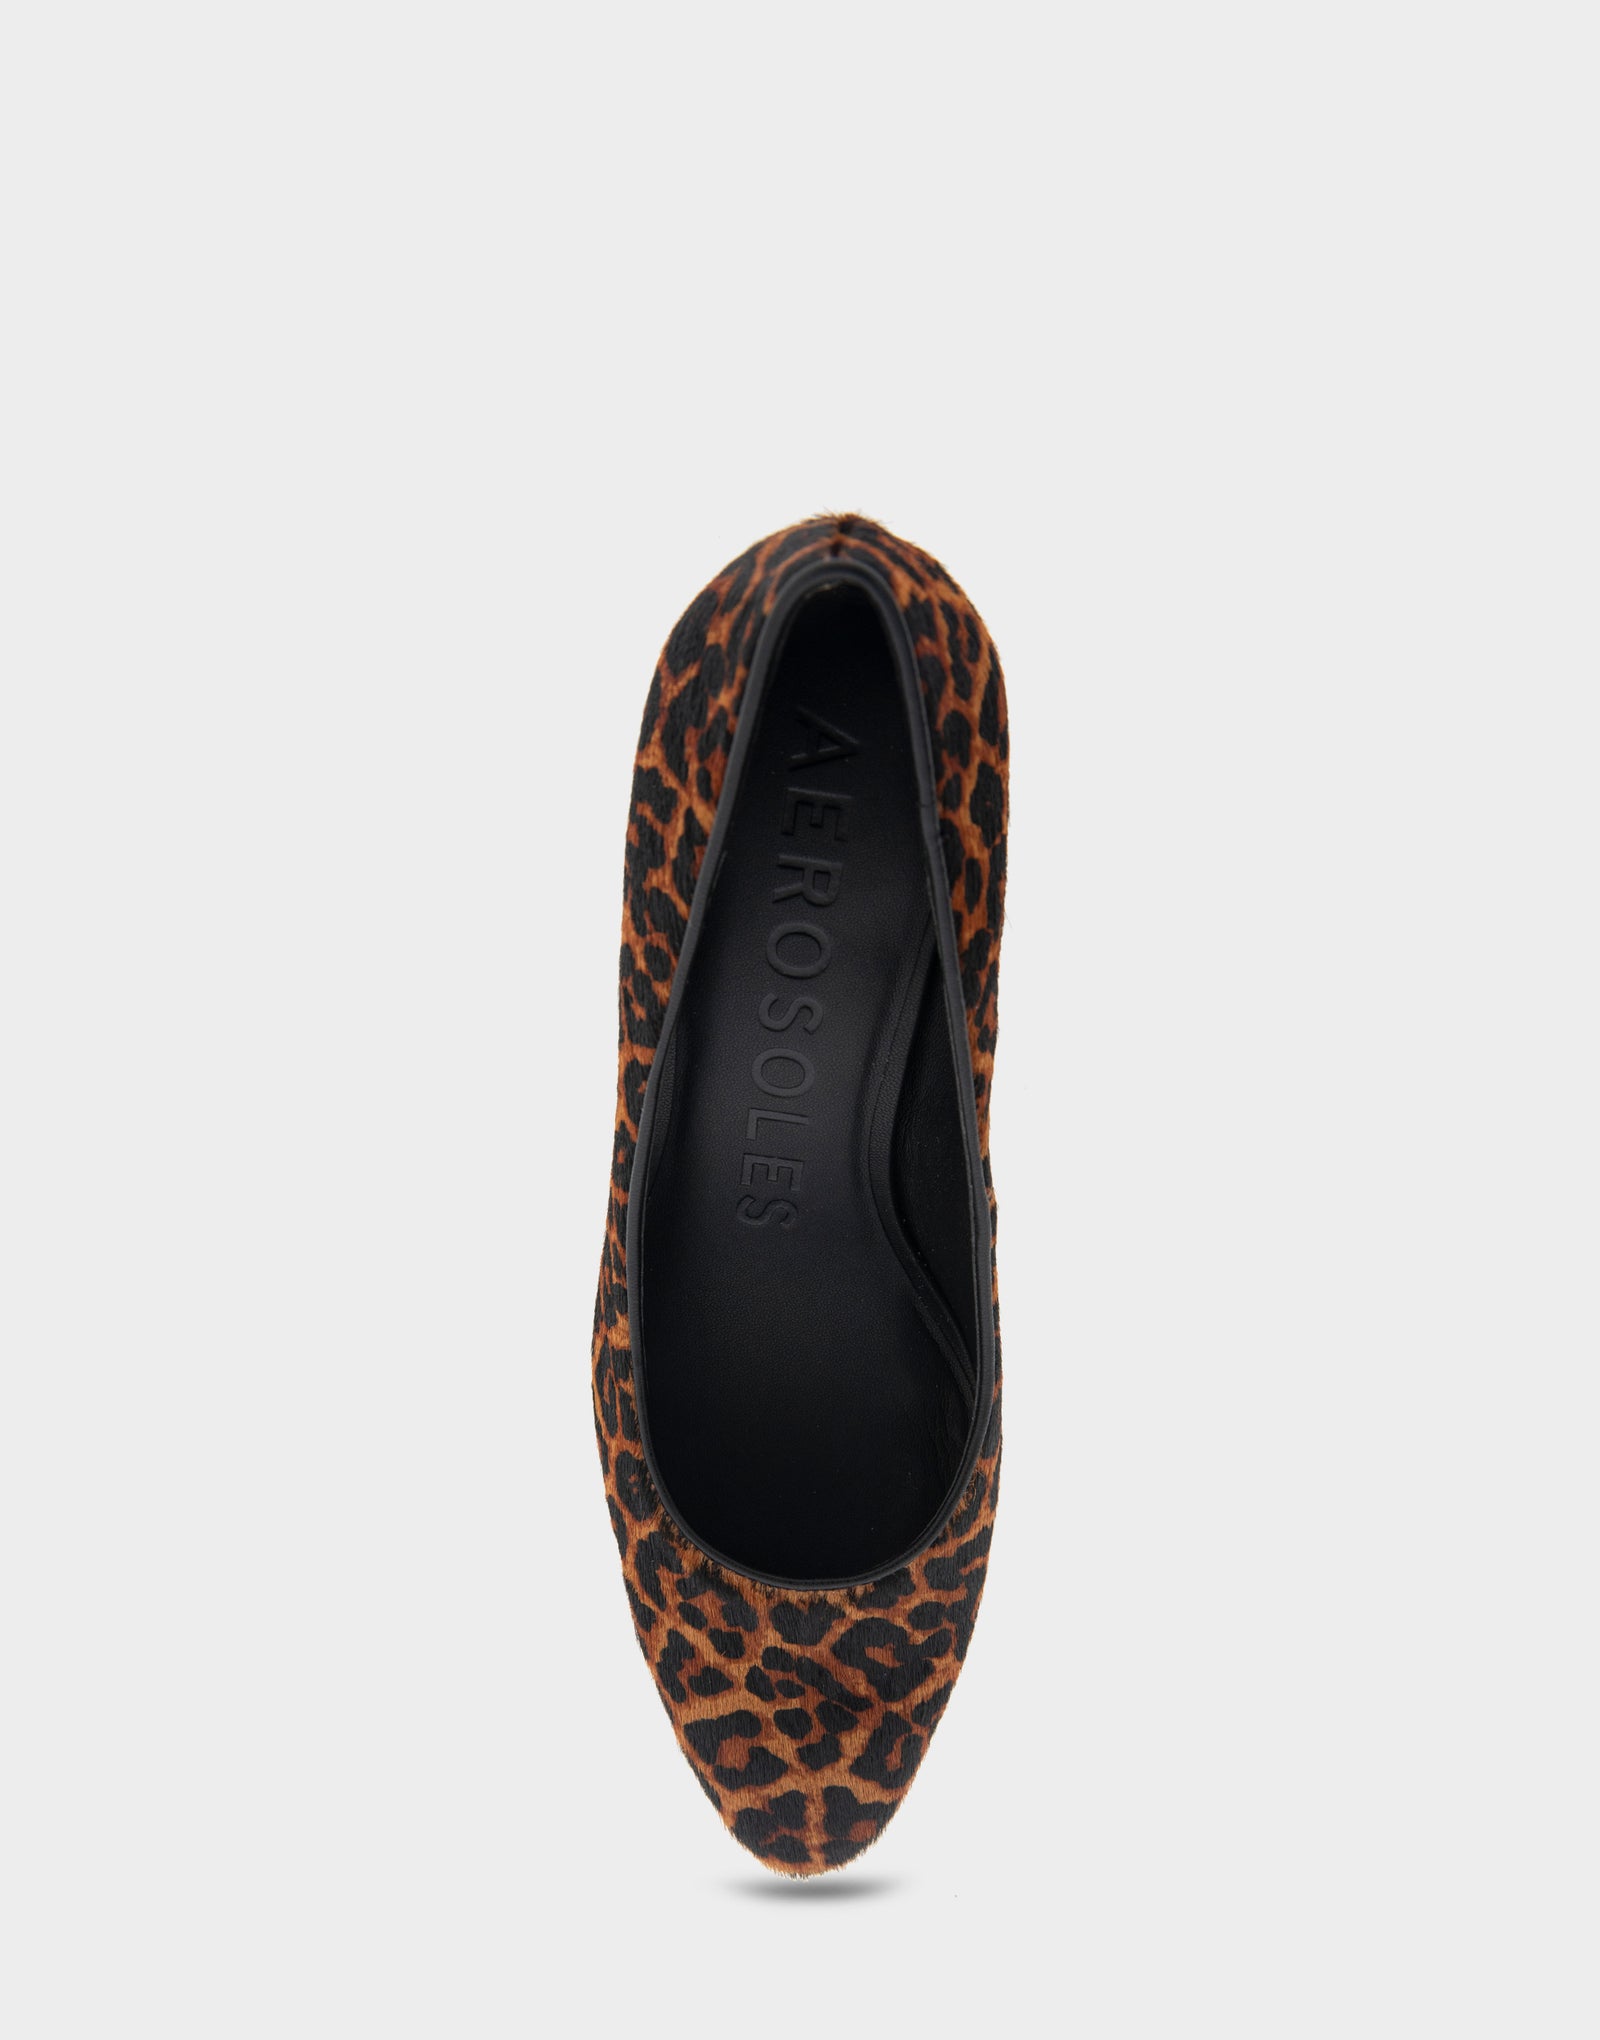 Women's Mid Heel Pump in Leopard Print